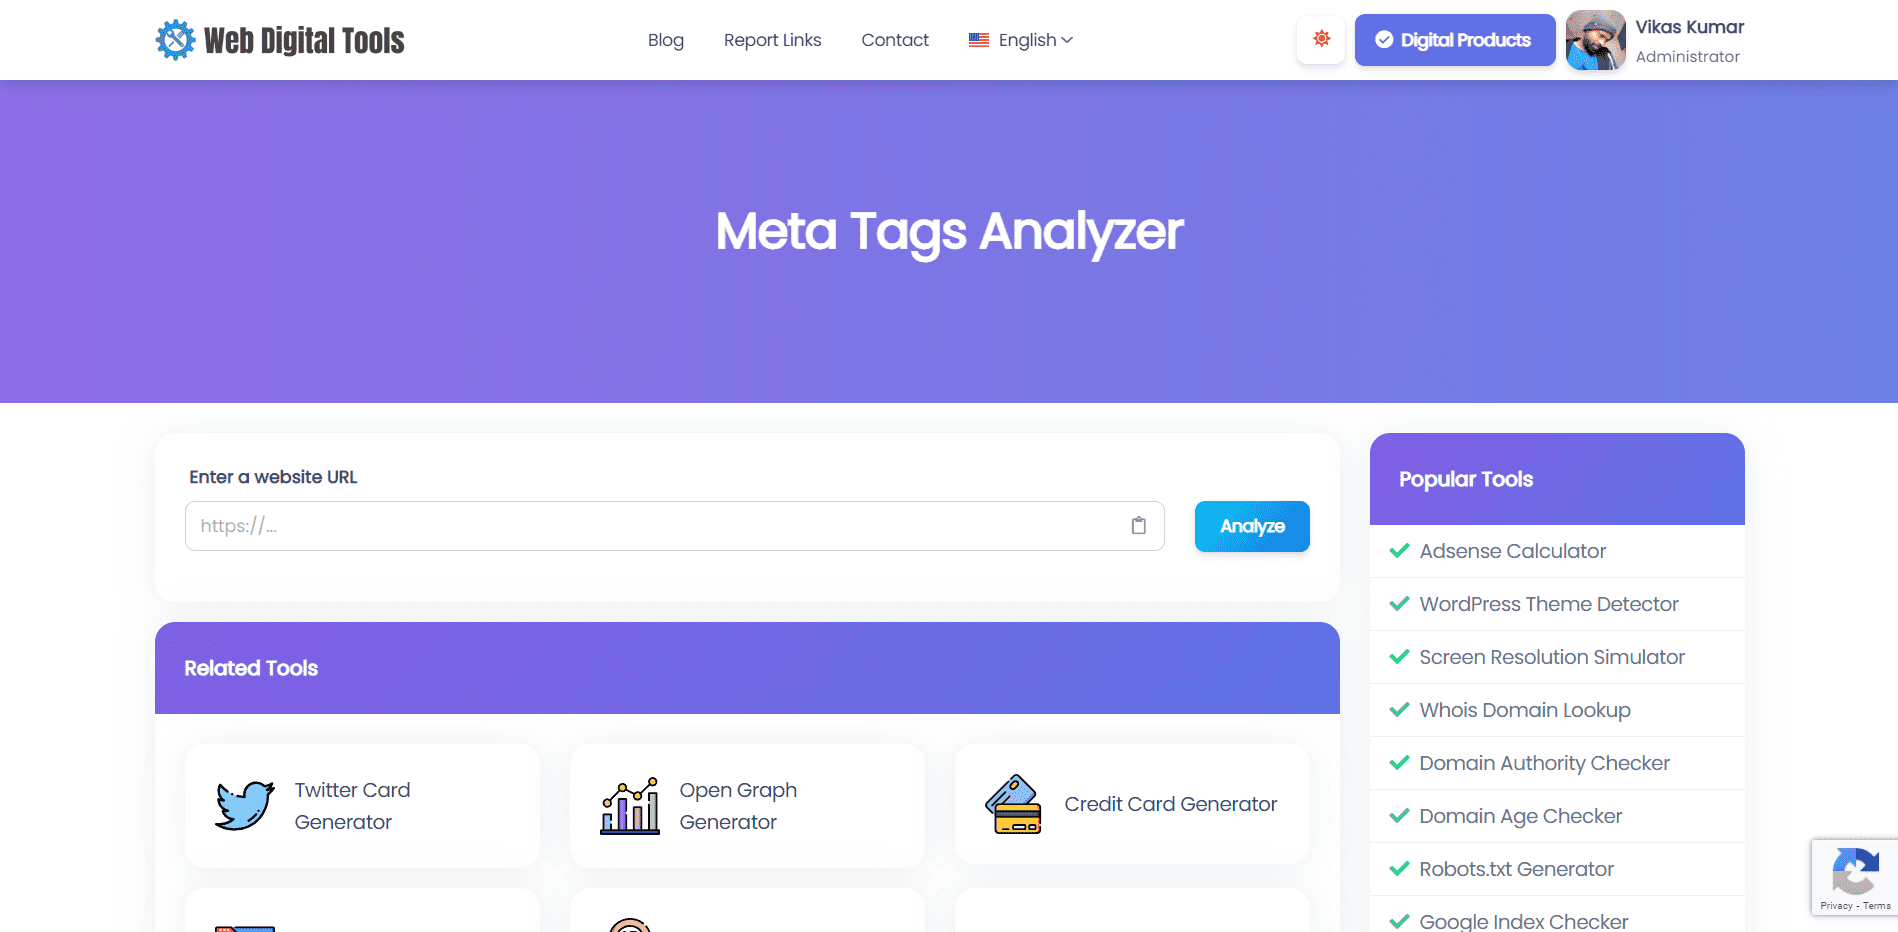 Meta Tags Analyzer